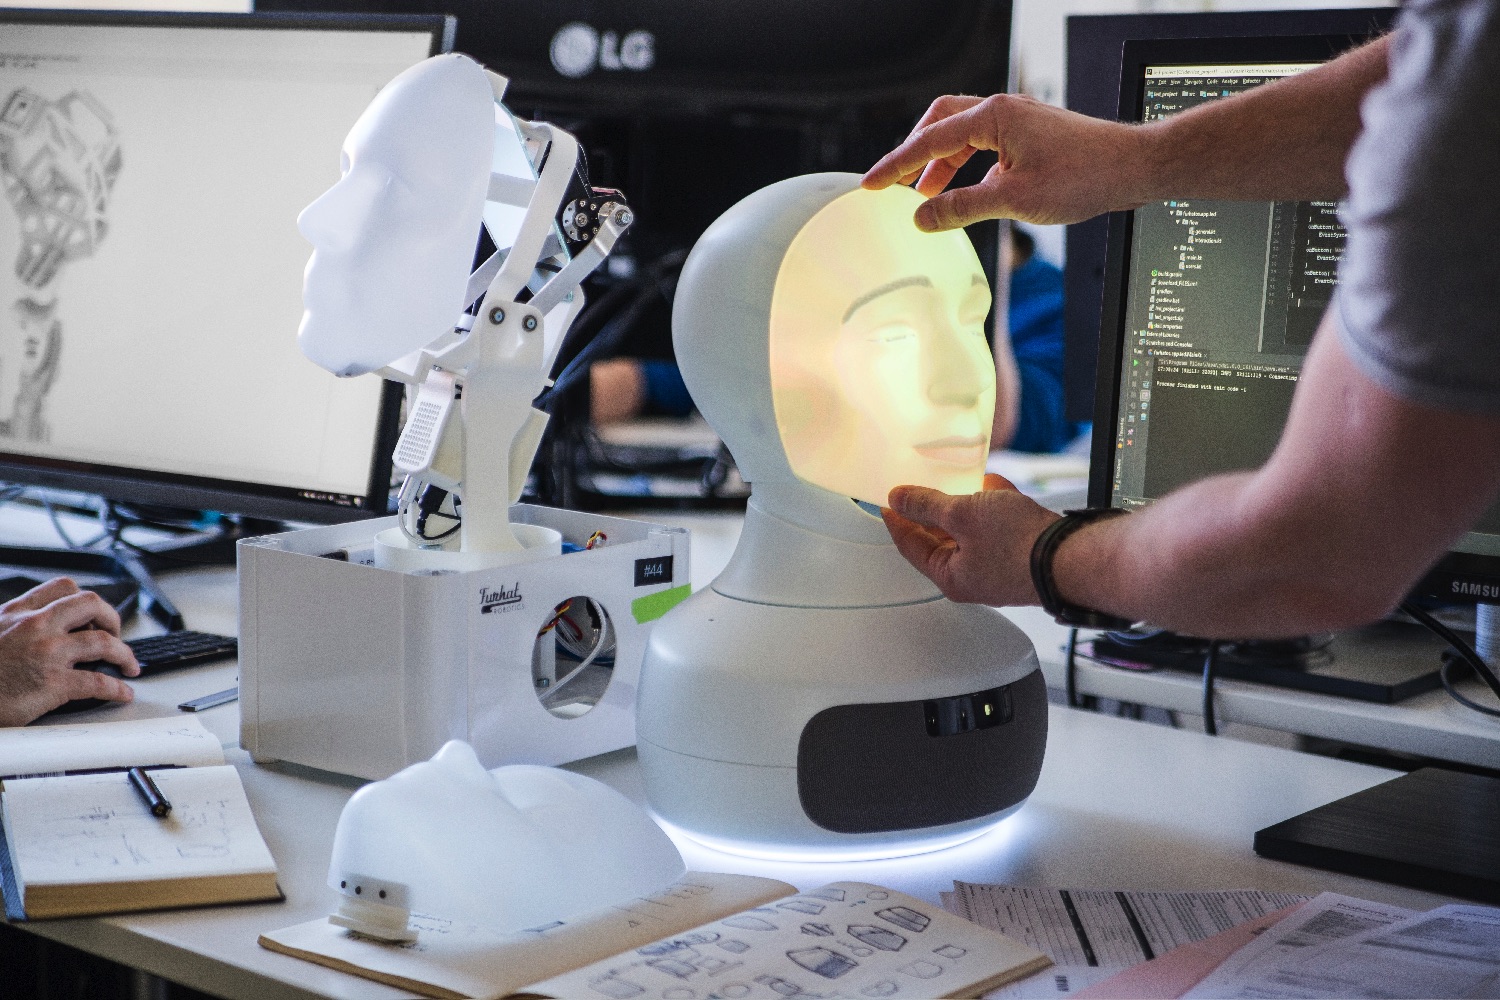 furhat social training robot replacing a mask